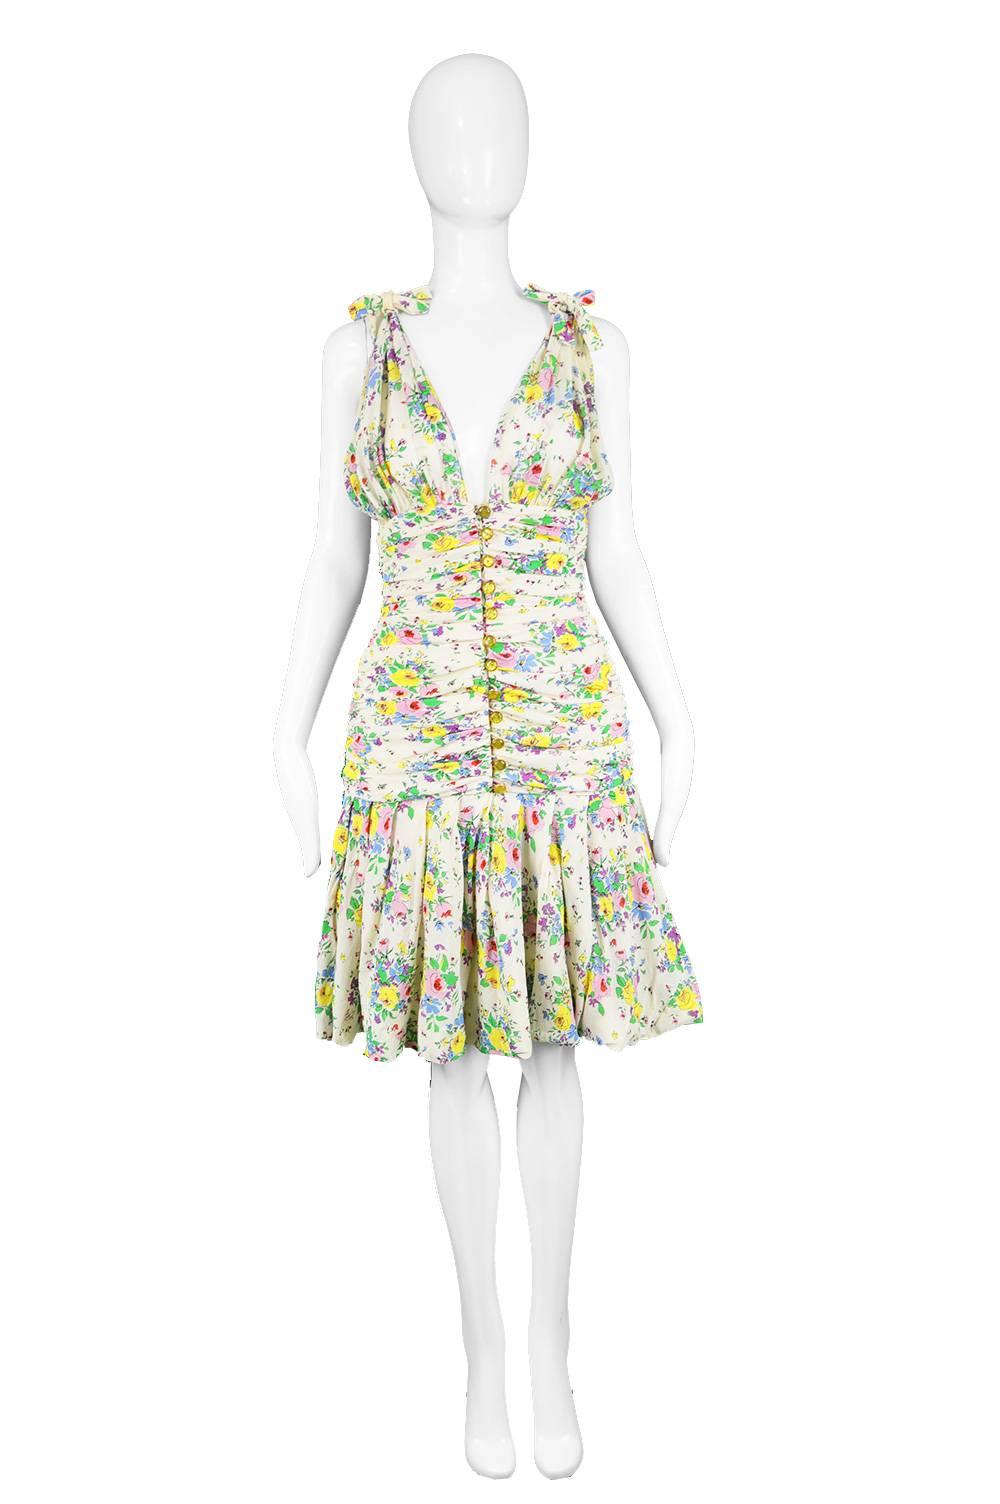 Emanuel Ungaro Vintage Off White Plunging Floral Chiffon Party Dress, 1980s

Estimated Size: UK 8/ US 4/ EU 36. Please check measurements. 
Bust - Free
Underbust - 28” / 71cm
Waist - 26” / 66cm
Hips - 34” / 86cm
Length (Shoulder to Hem) - 38” /